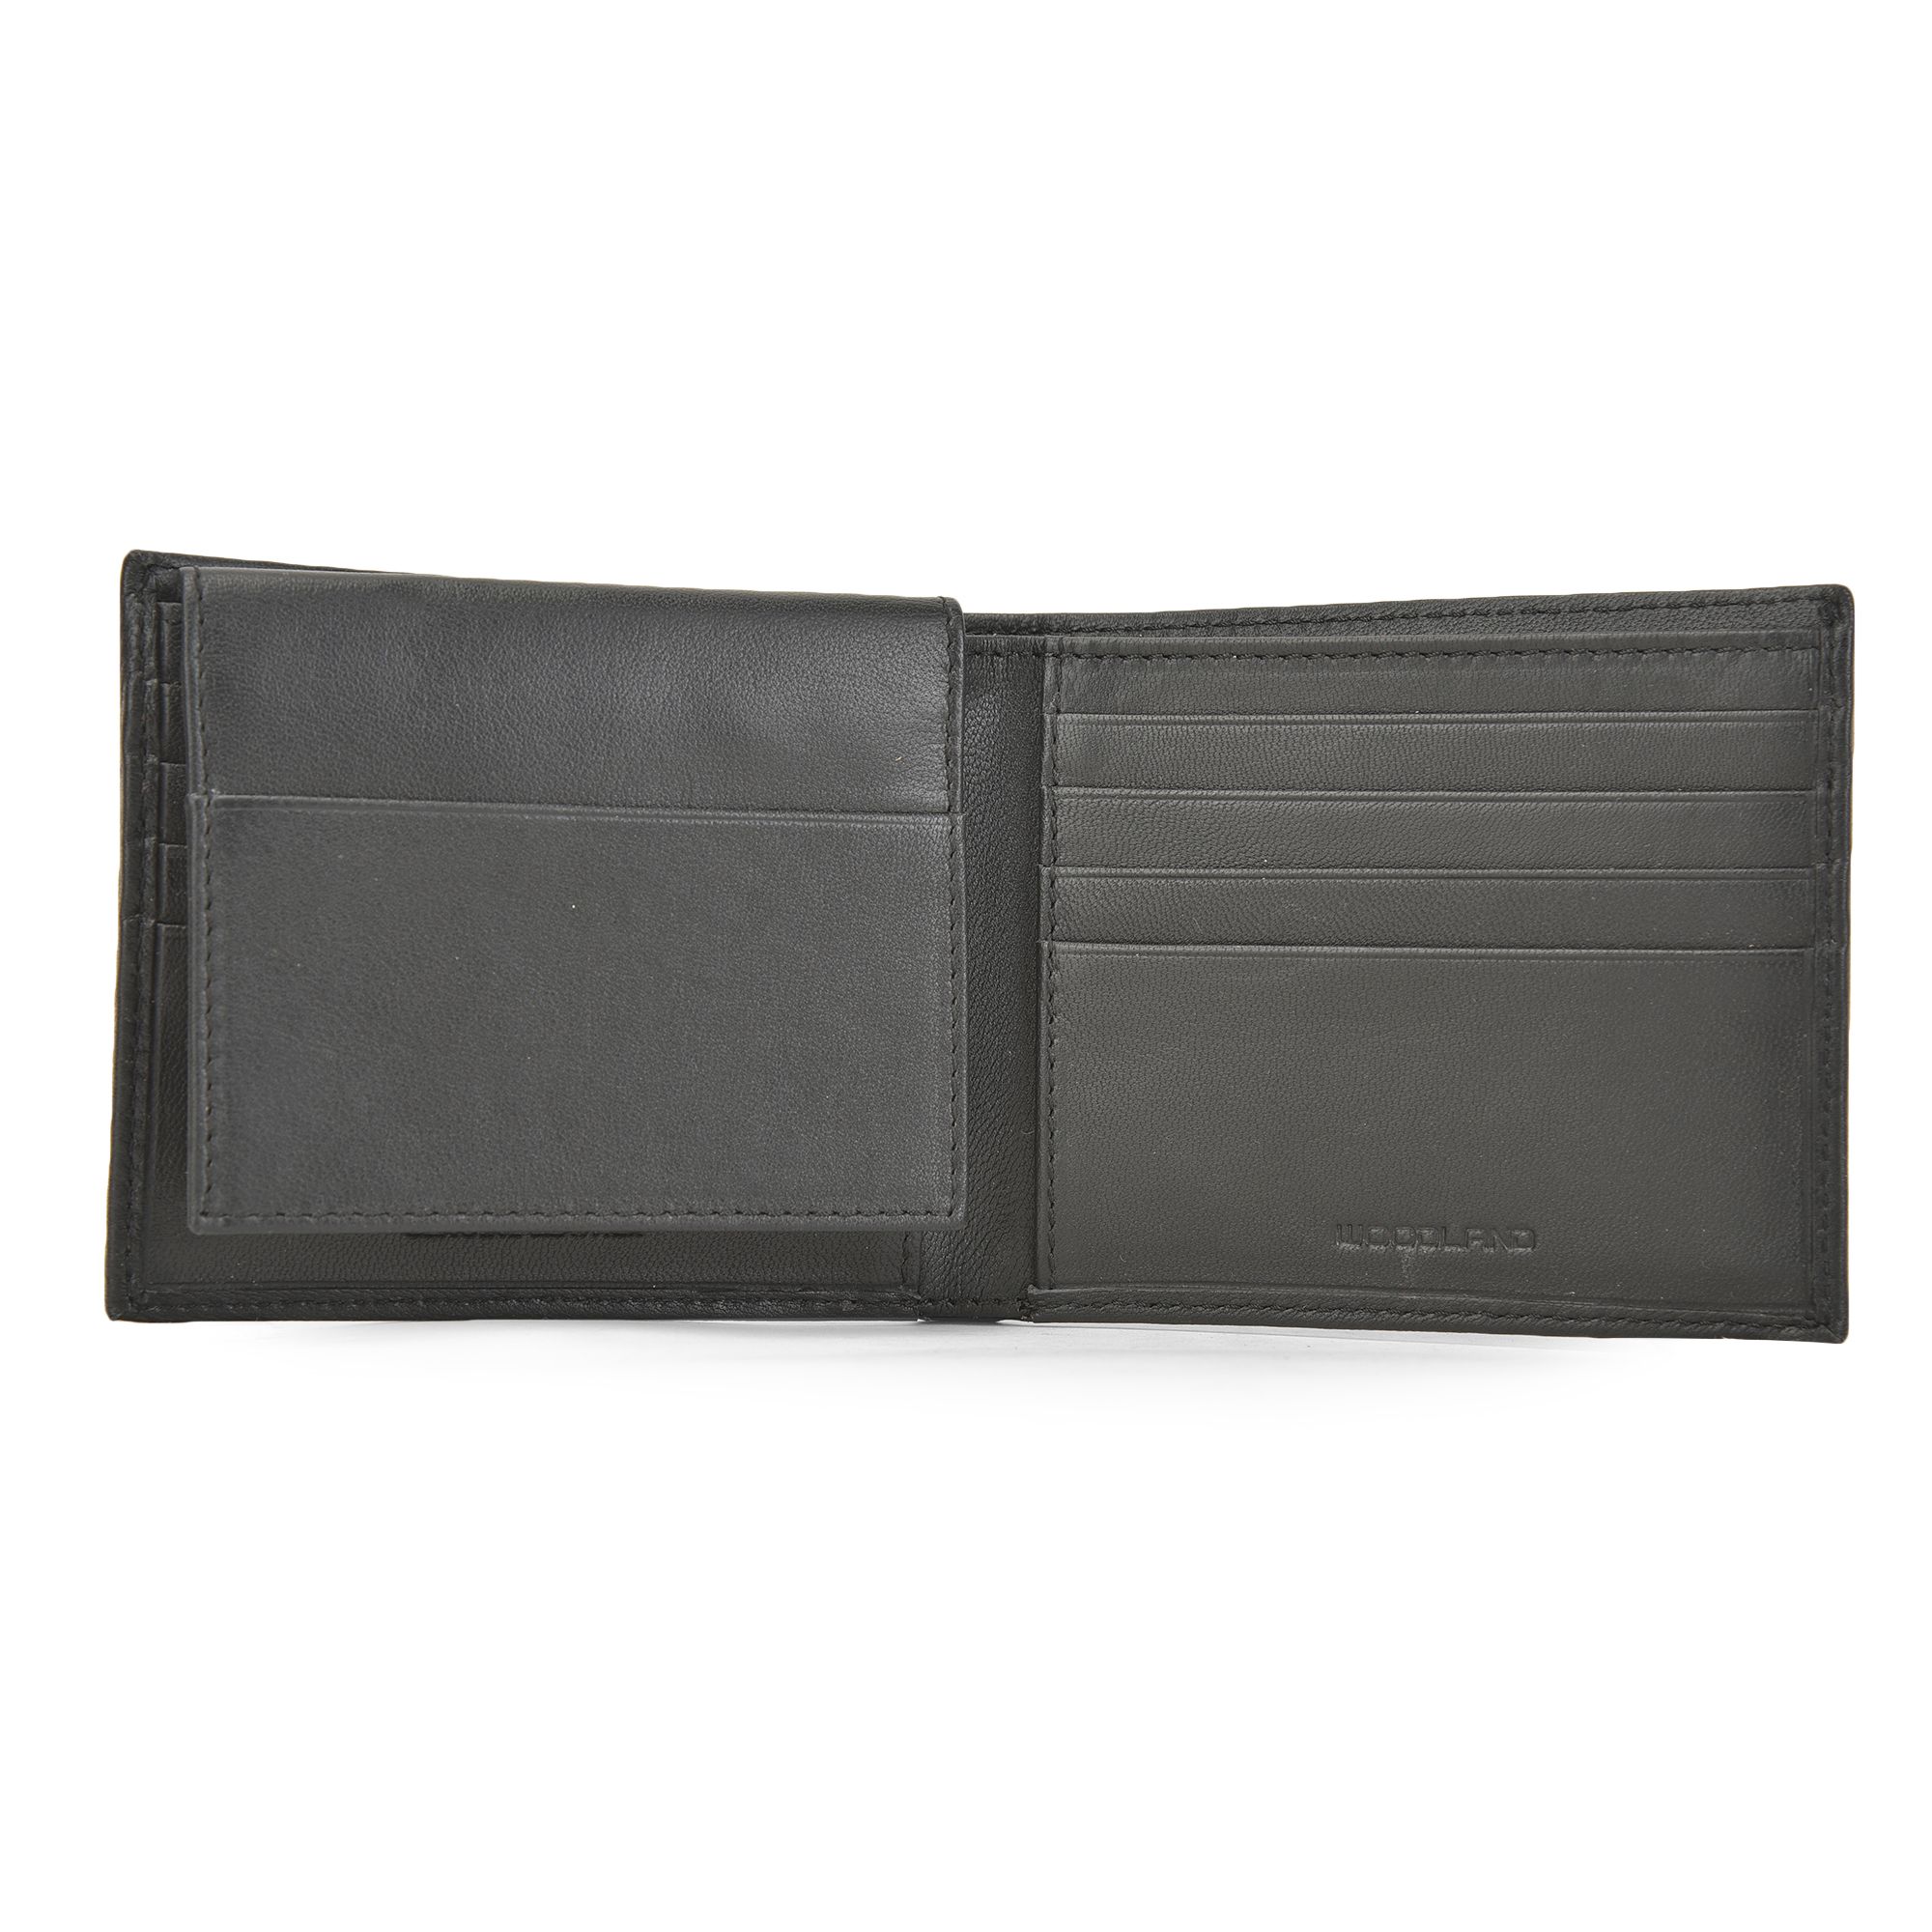 Black leather wallet for men